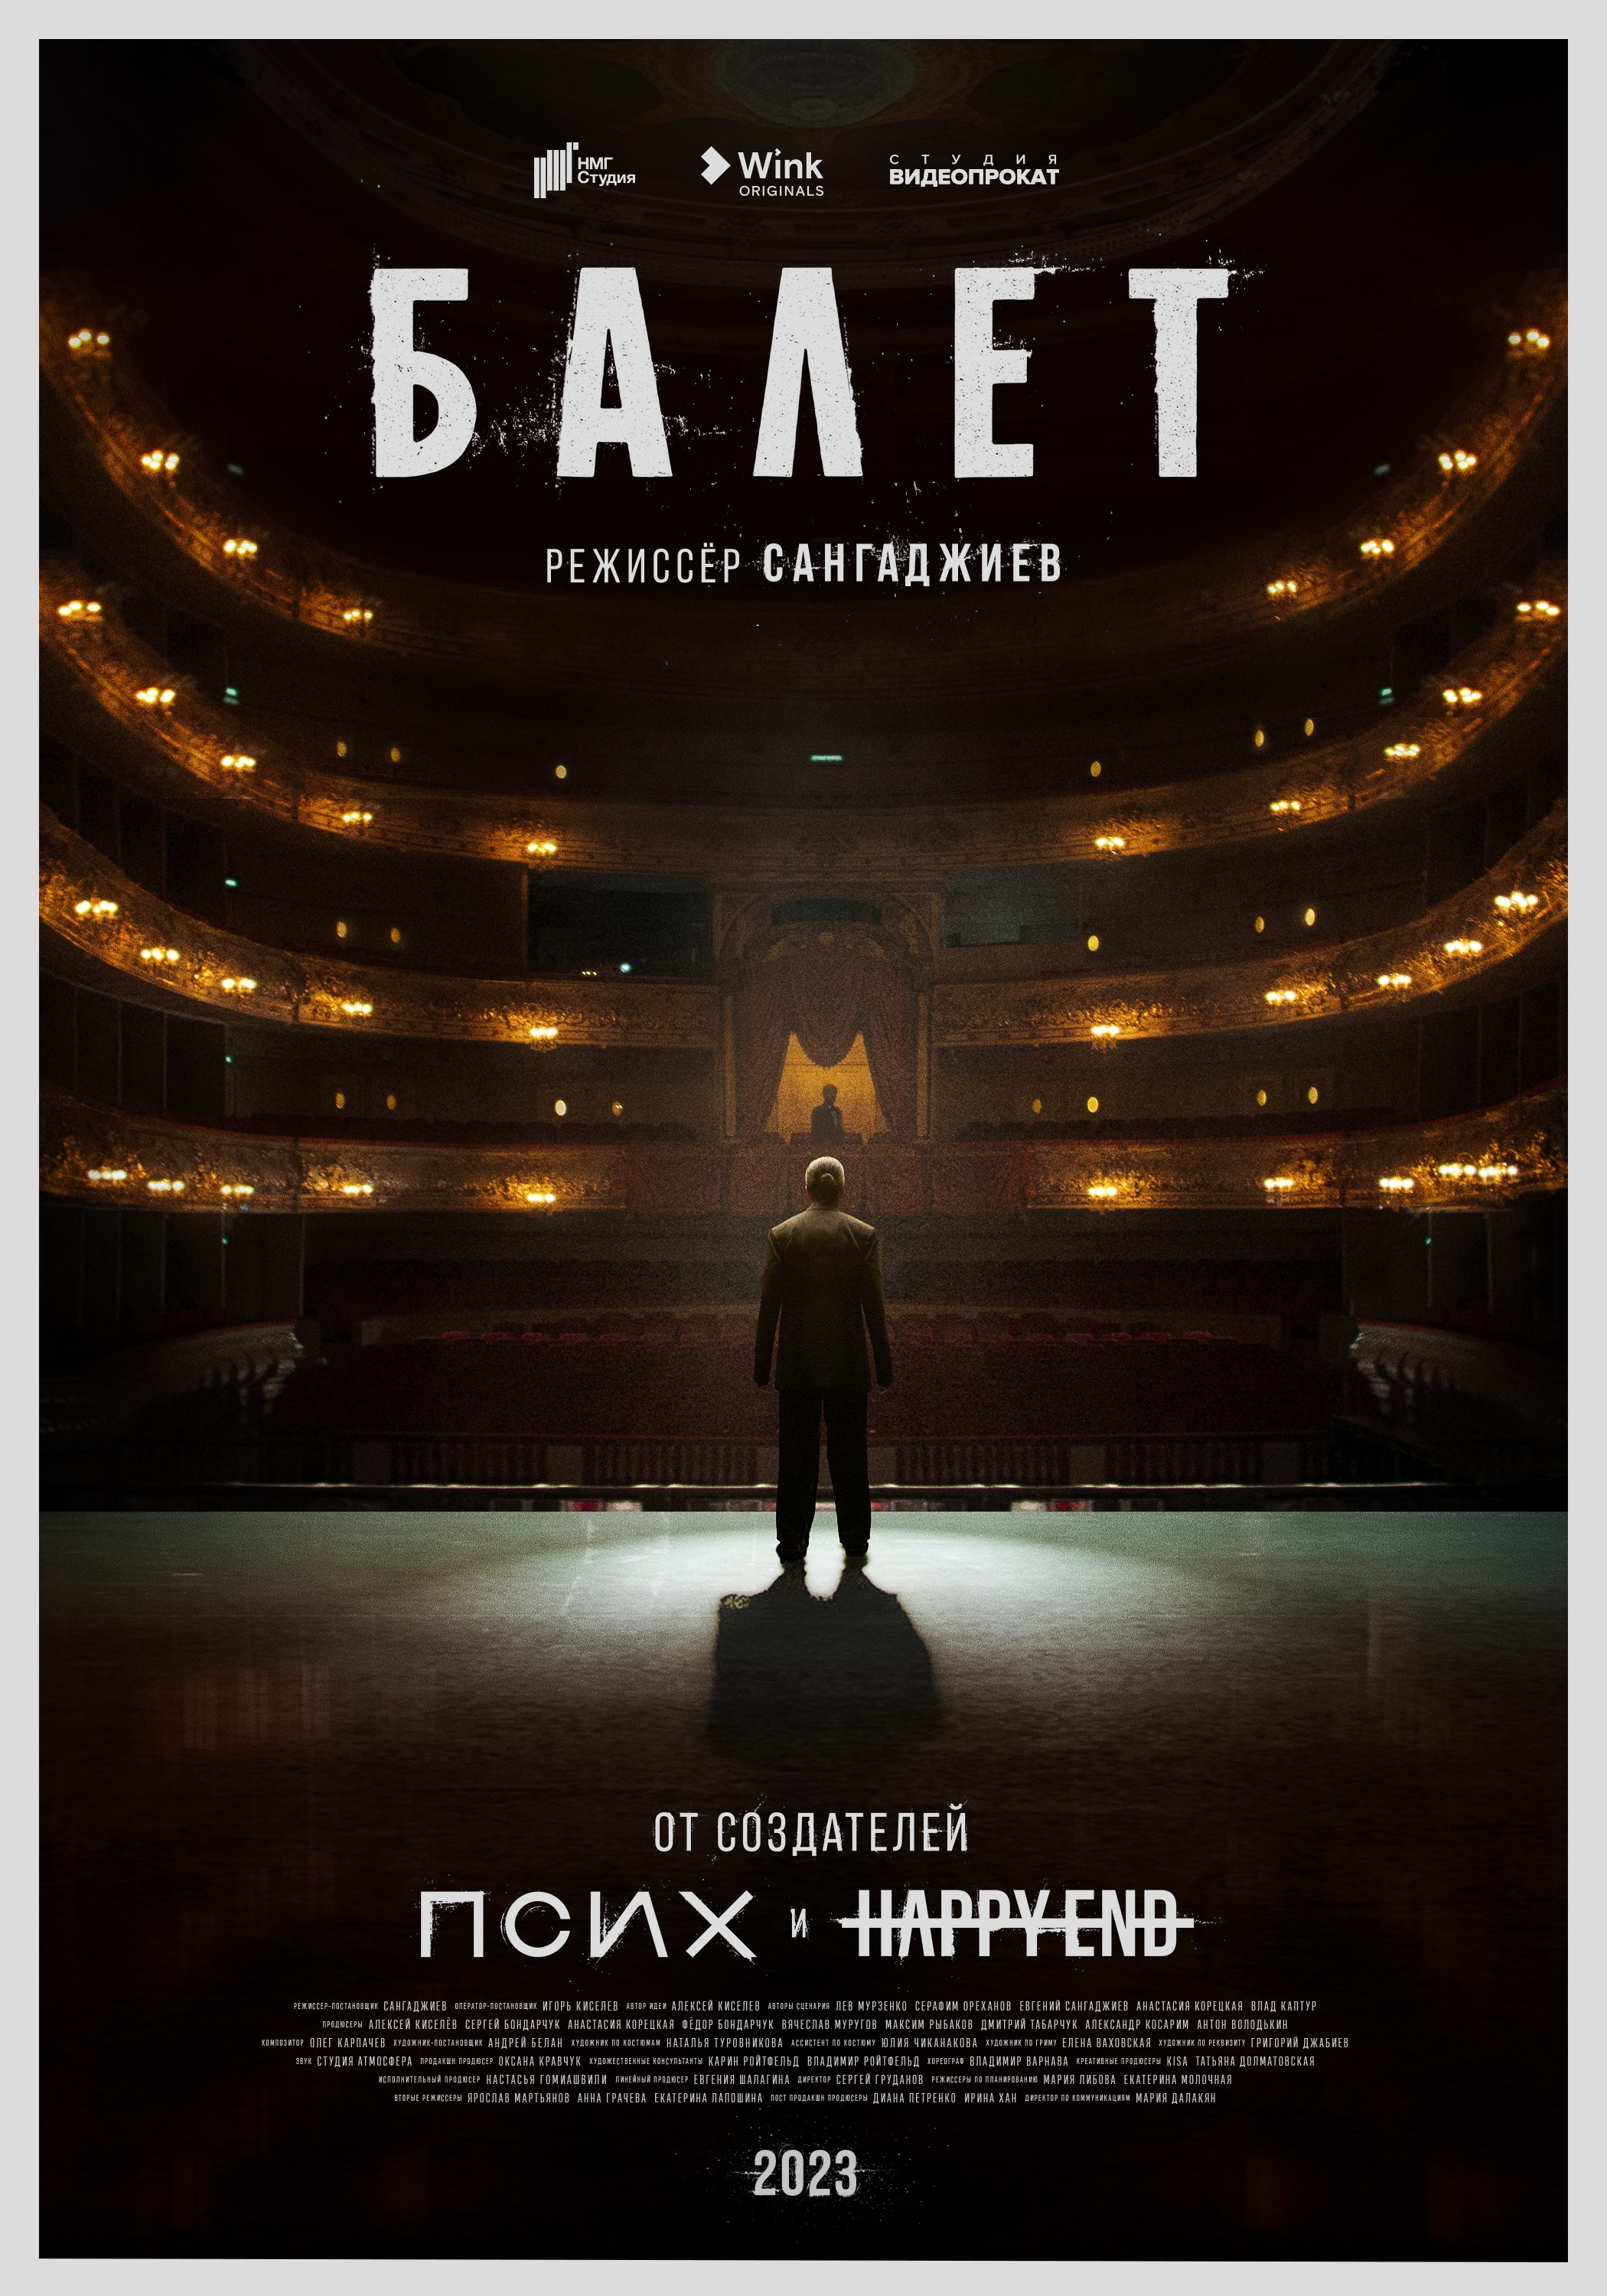 Читатели «РГ» первыми увидят трейлер сериала «Балет» с Аллой Сигаловой и Федором Бондарчуком в ролях